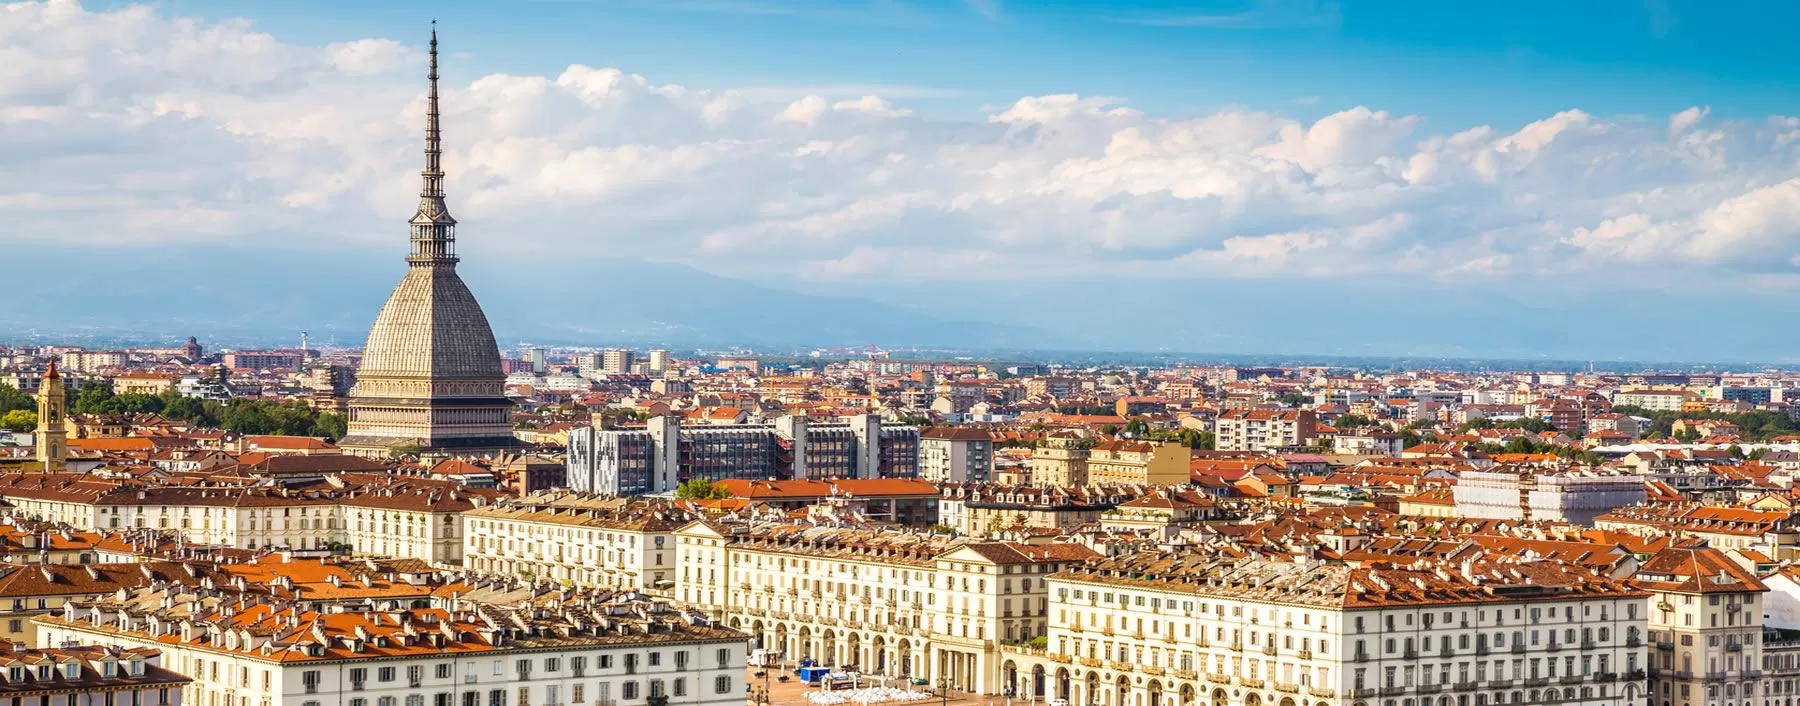 Musei di Torino: visitare la città in 7 percorsi diversi